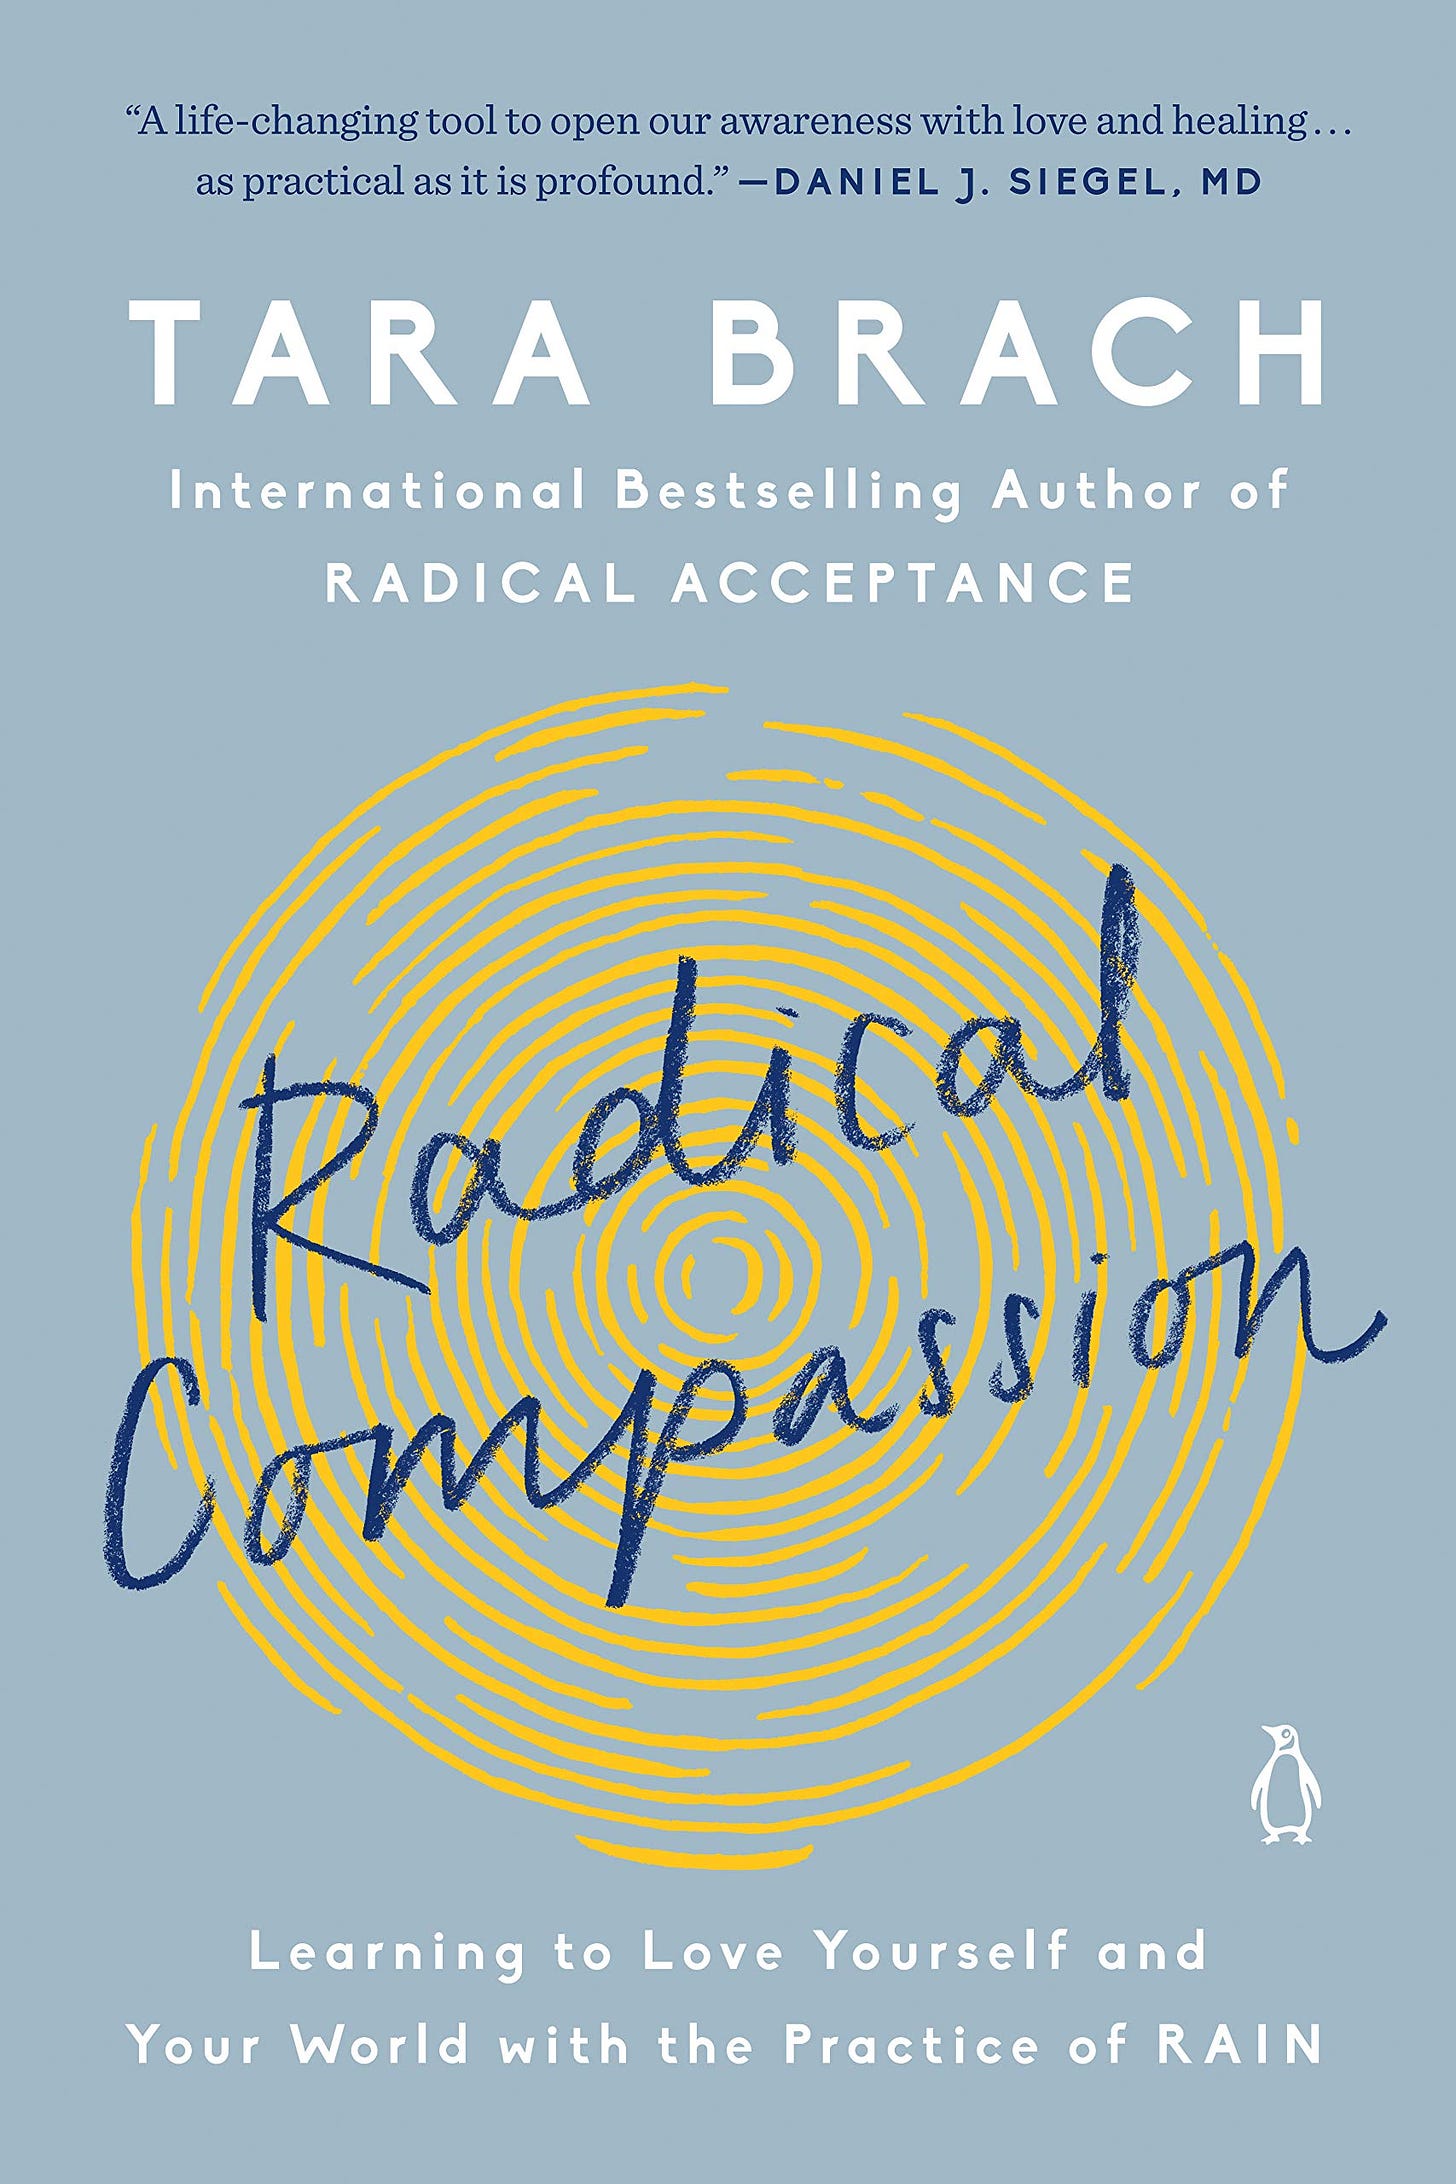 Radical Compassion by Tara Brach